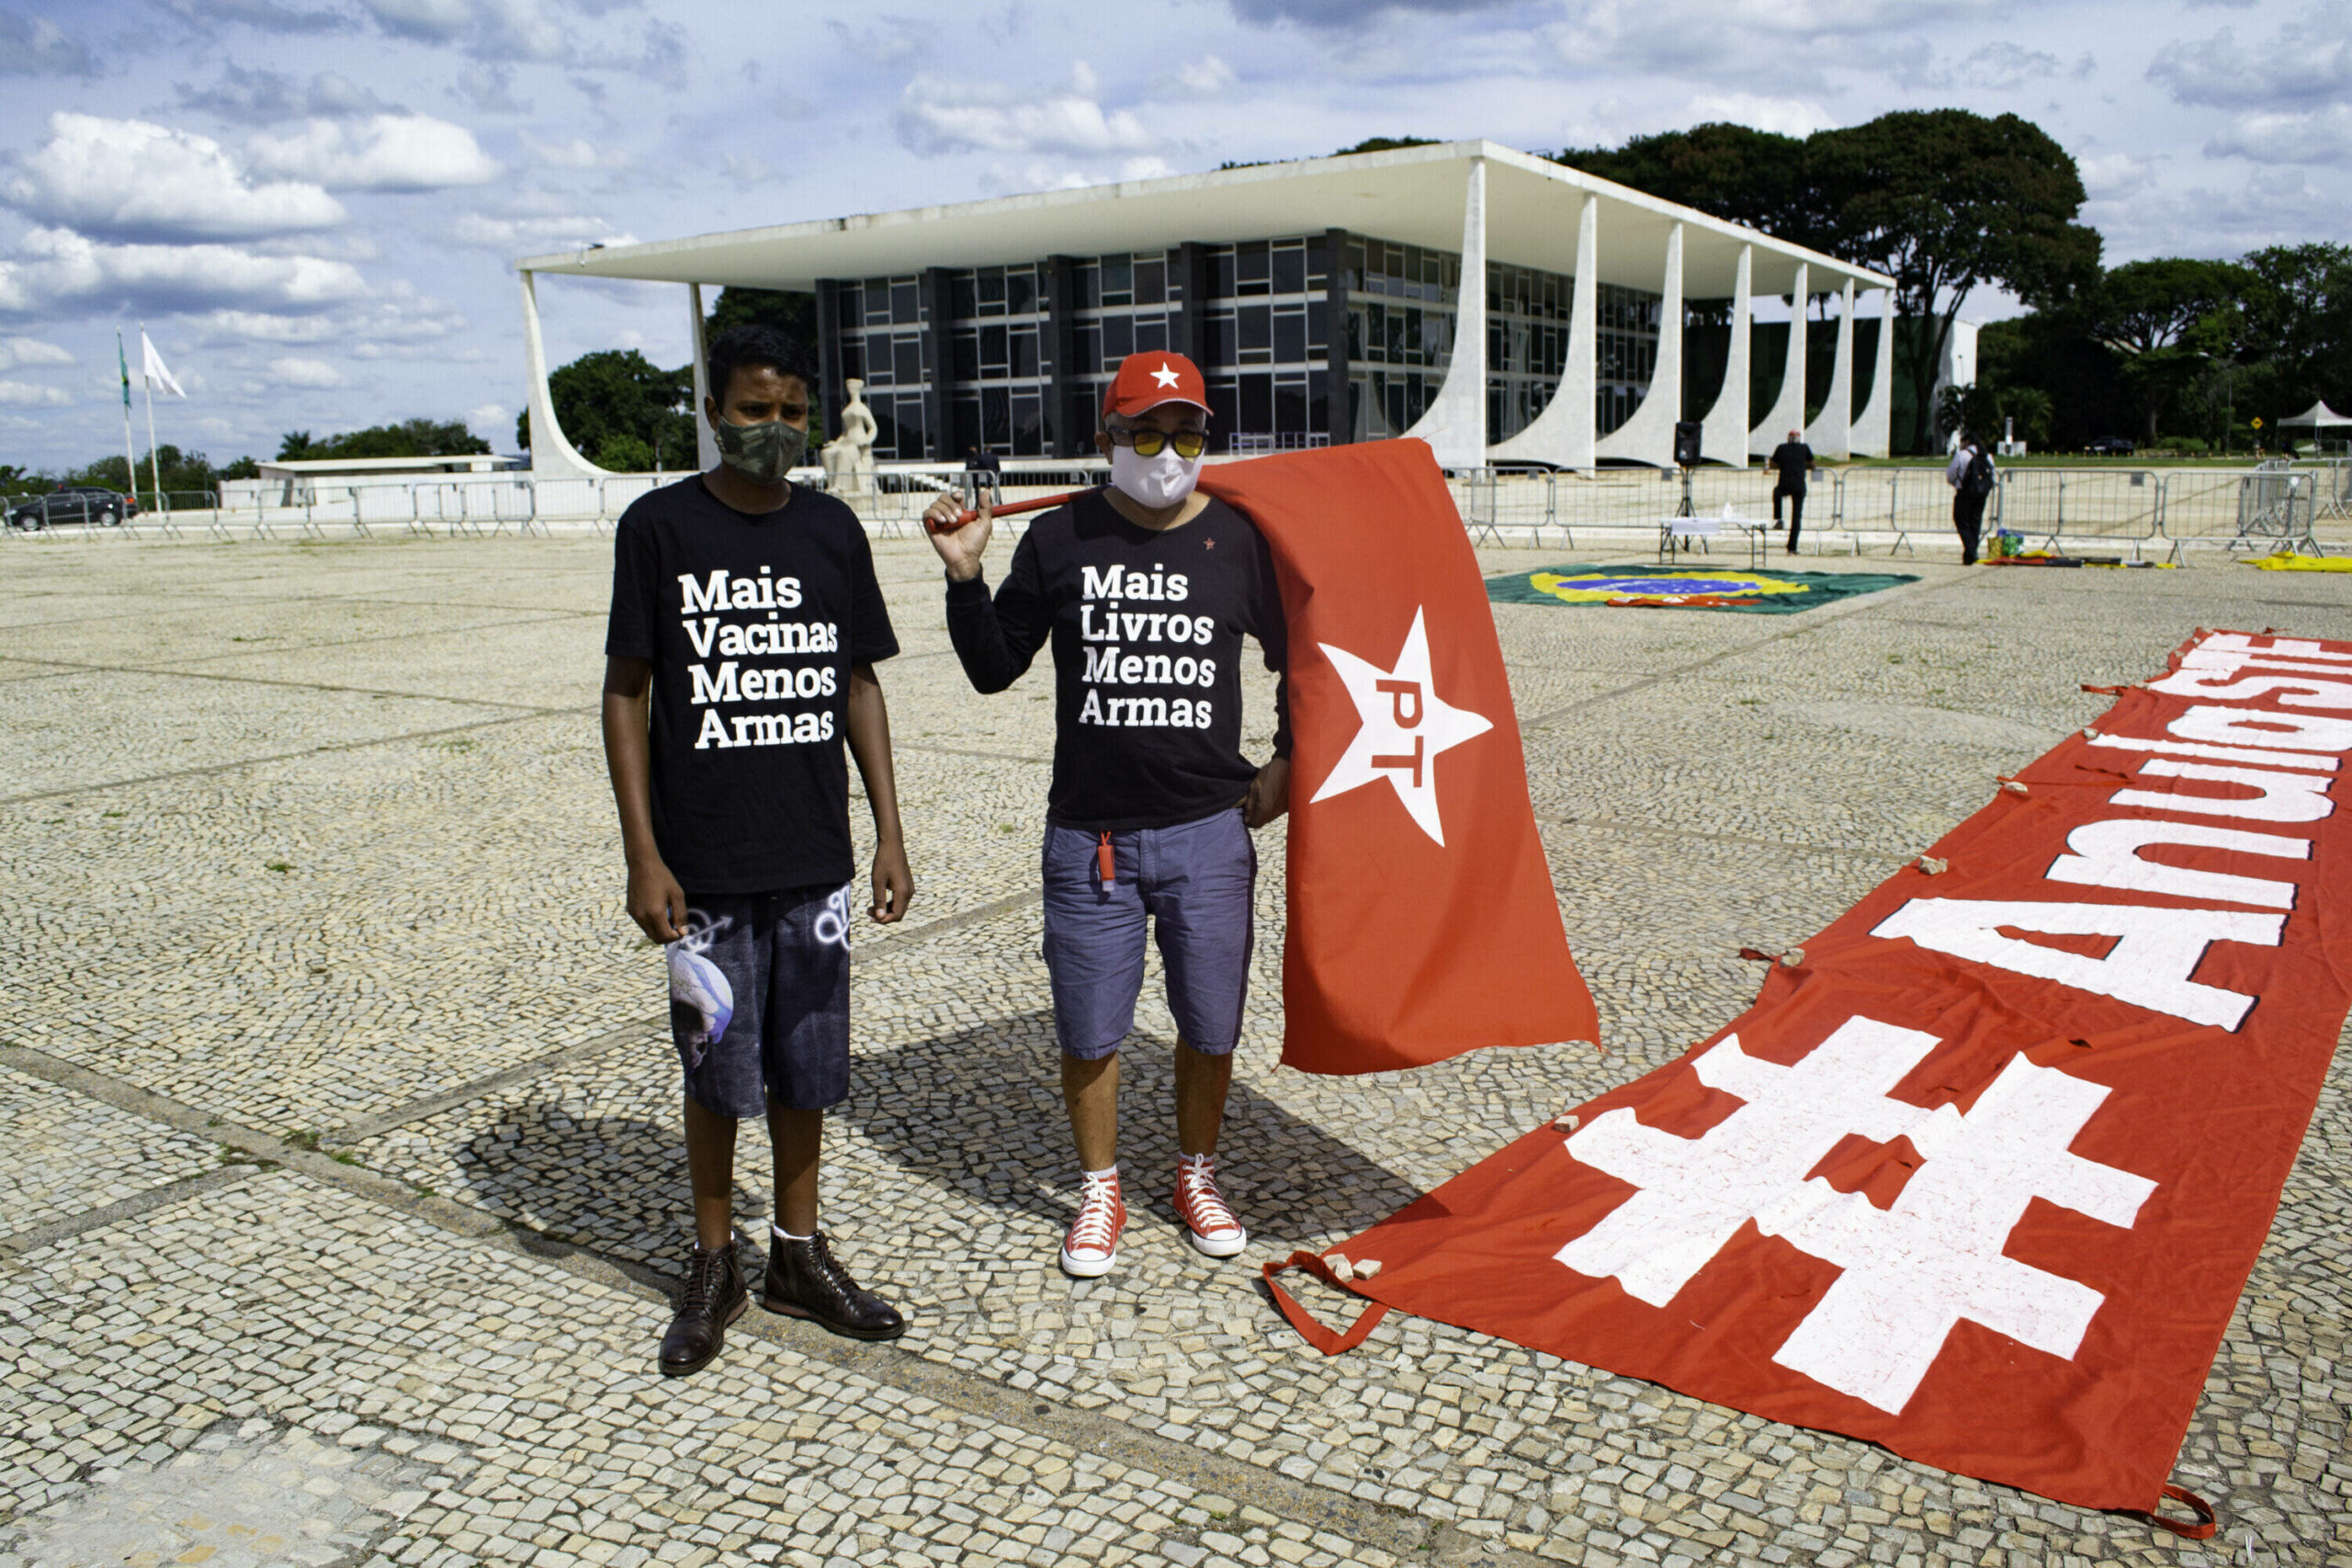 Протест в поддержку экс-президента Бразилии Лулы перед судьей Верховного суда в Бразилиа